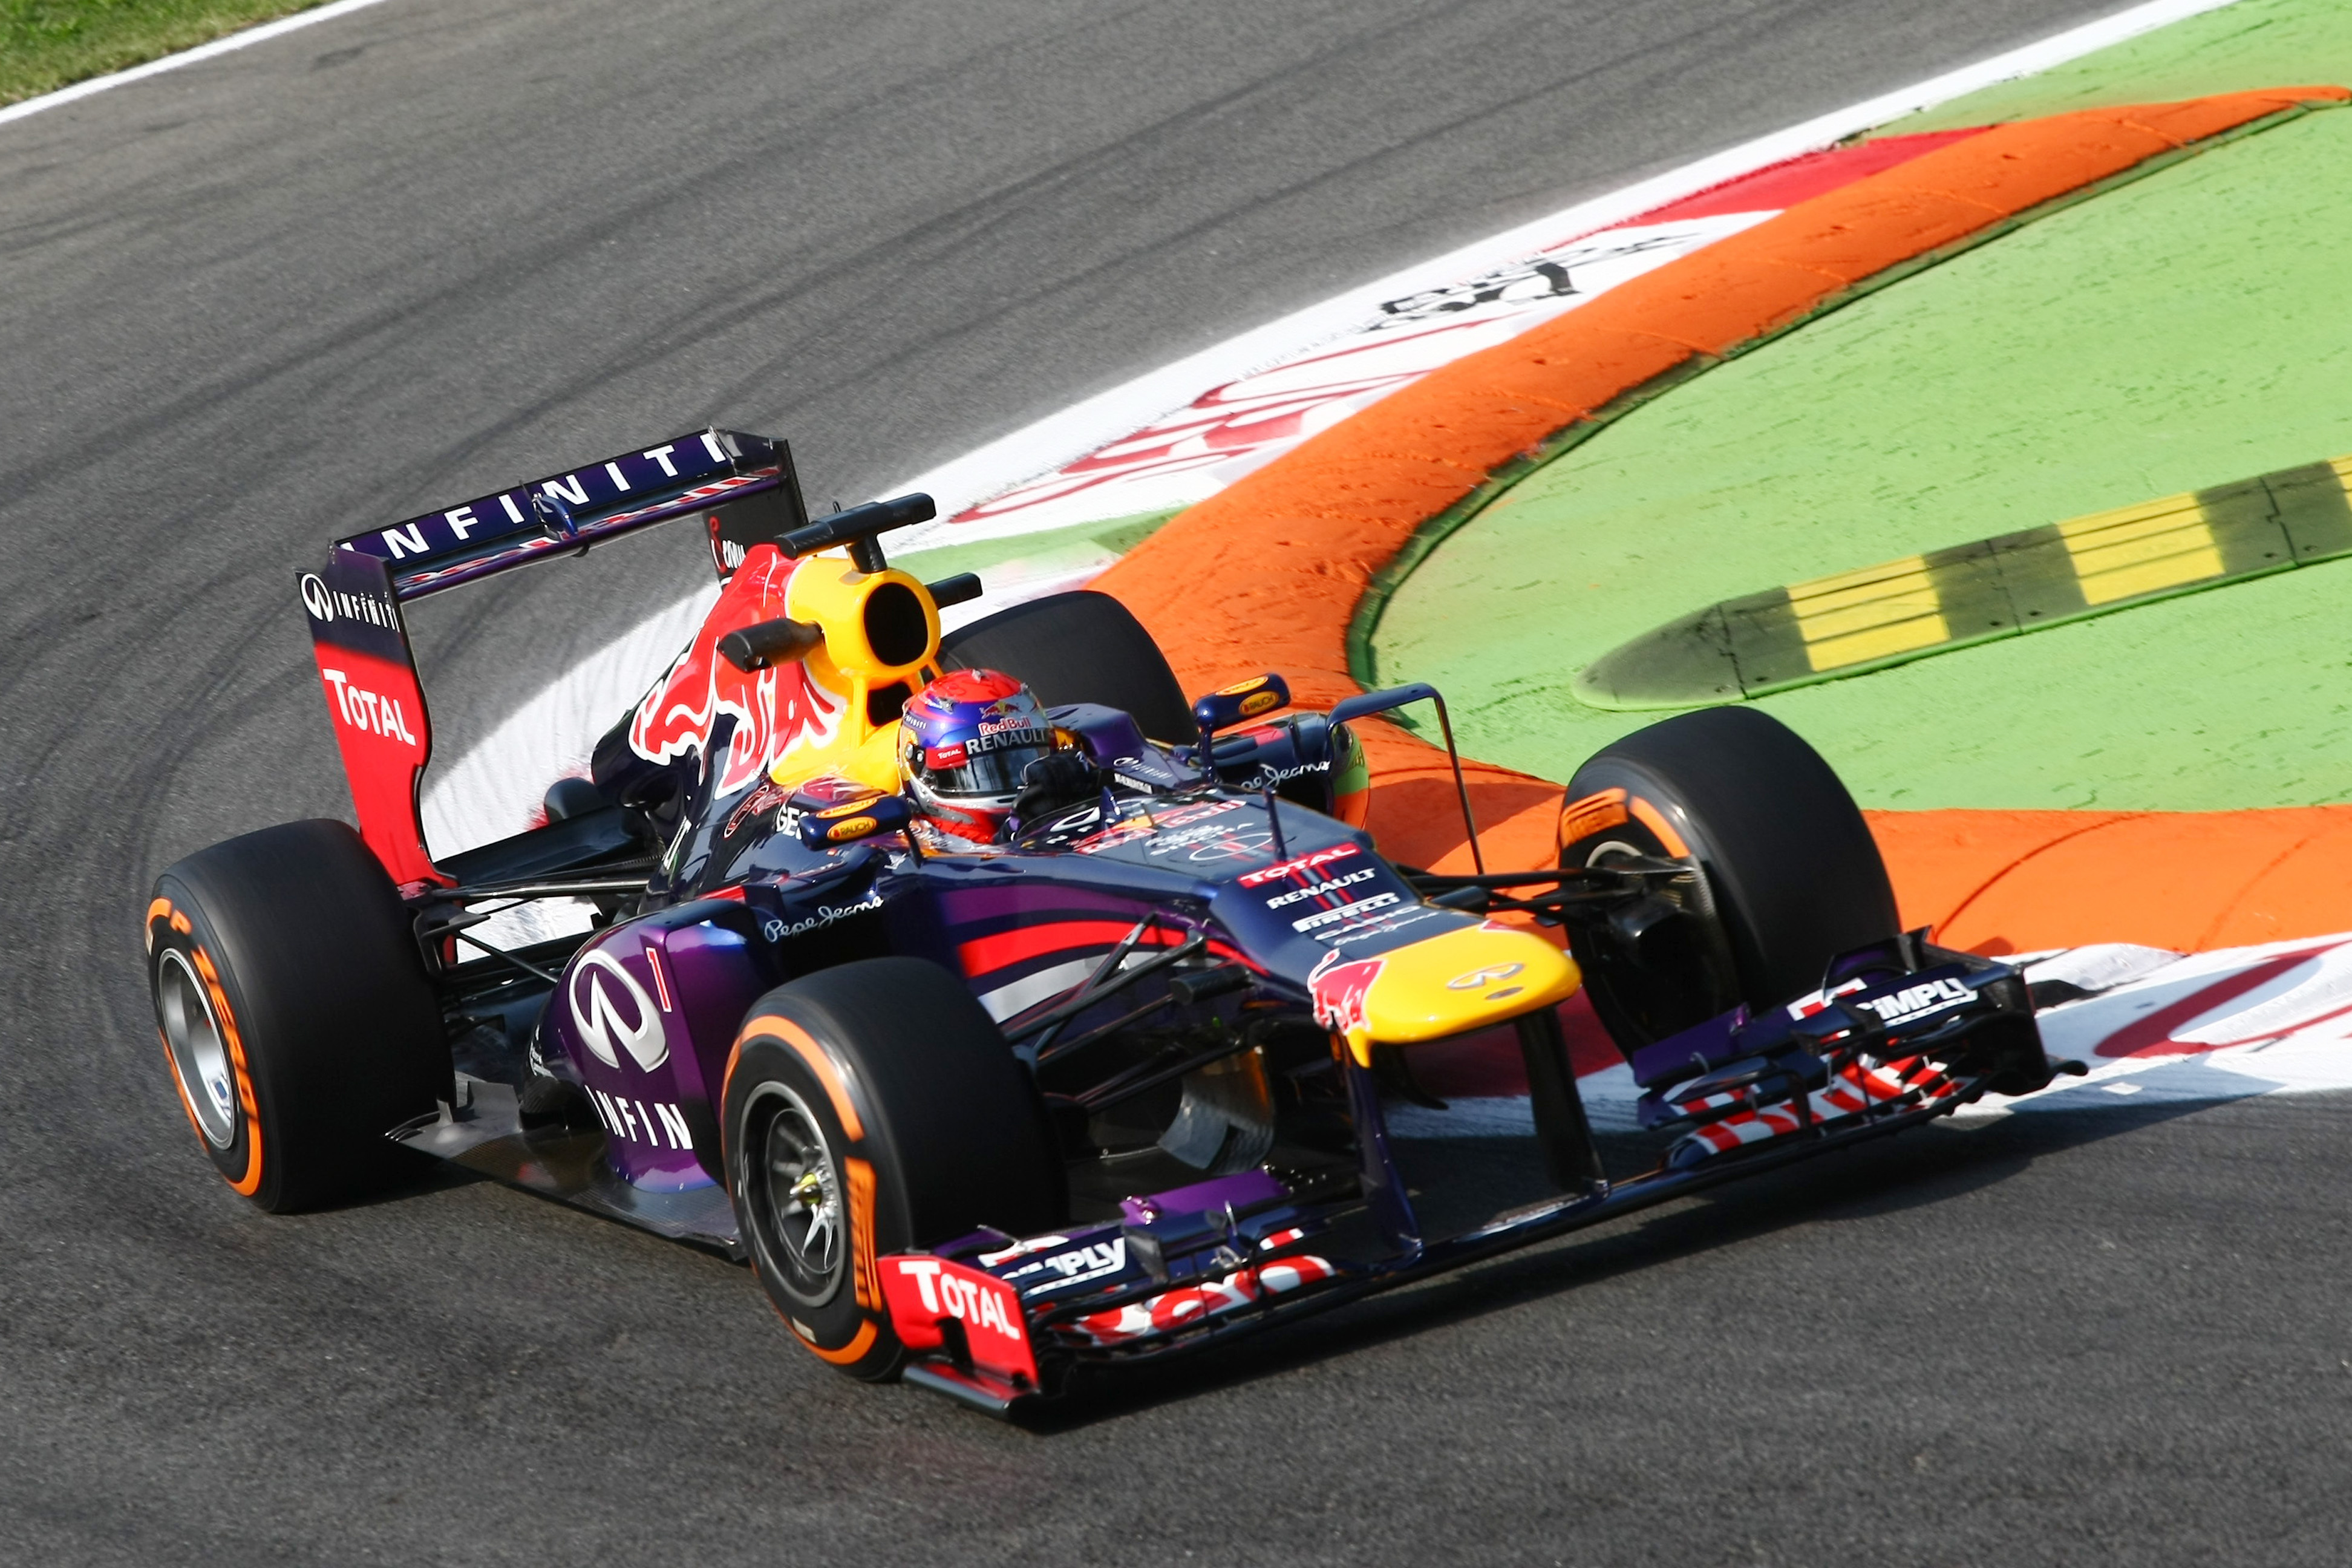 VT2: achter Vettel is het spannend